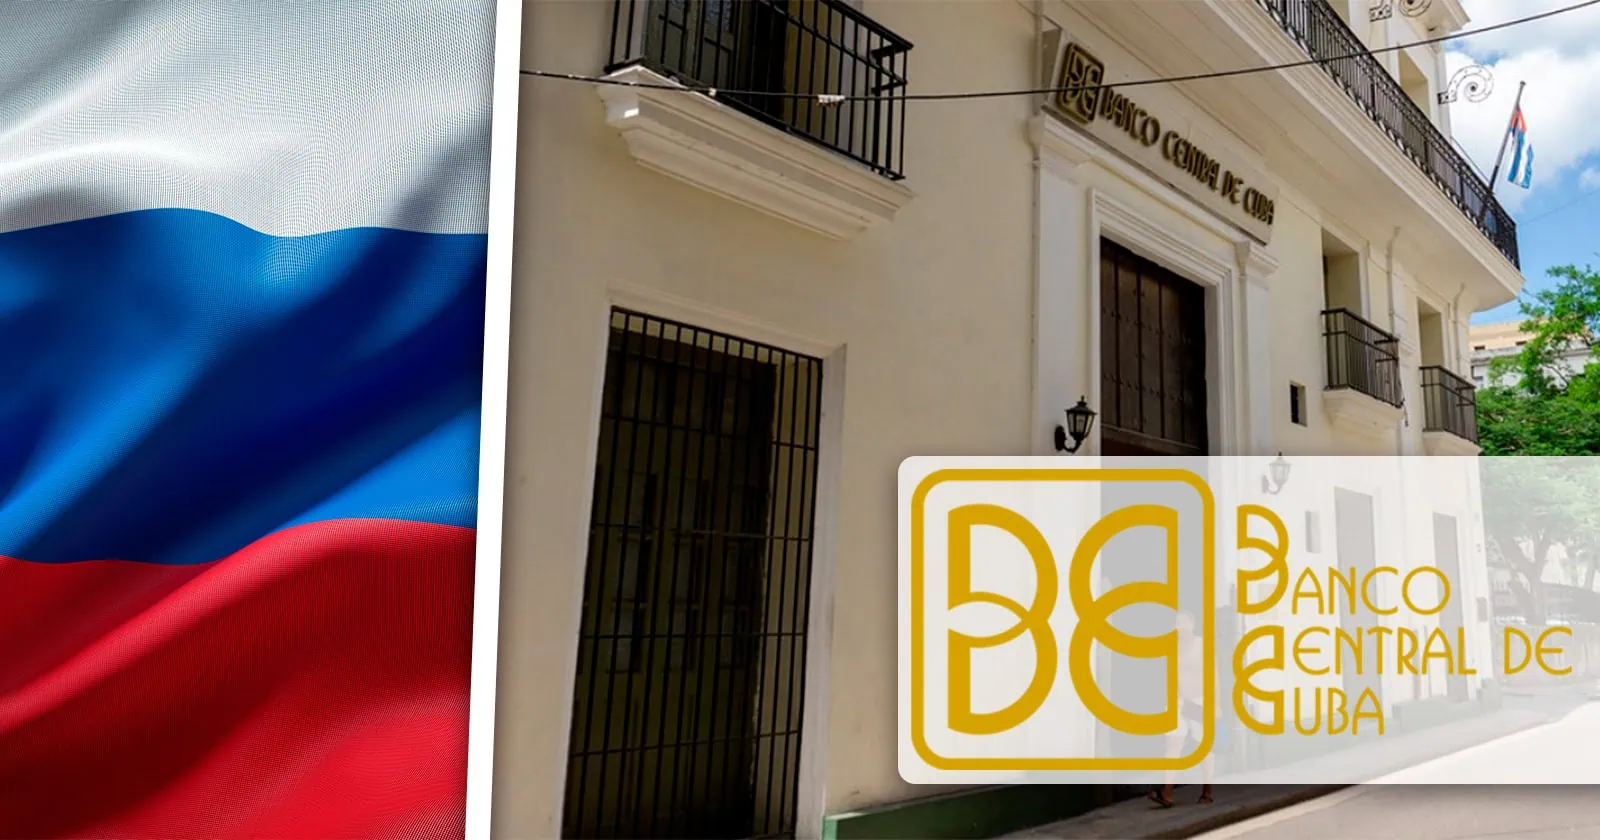 Resoluciones para España y Otras "Soluciones Rusas" del Banco Central de Cuba